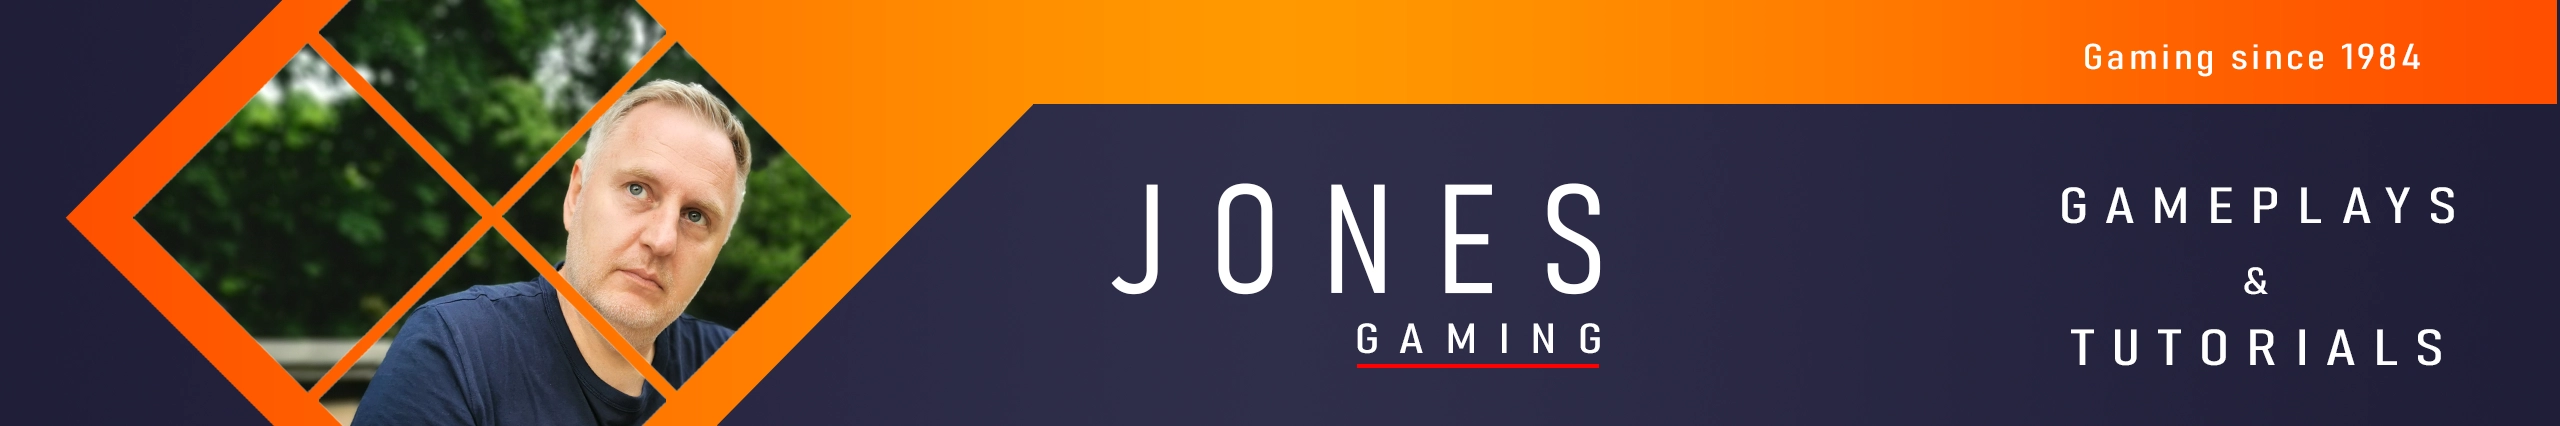 Jones Gaming